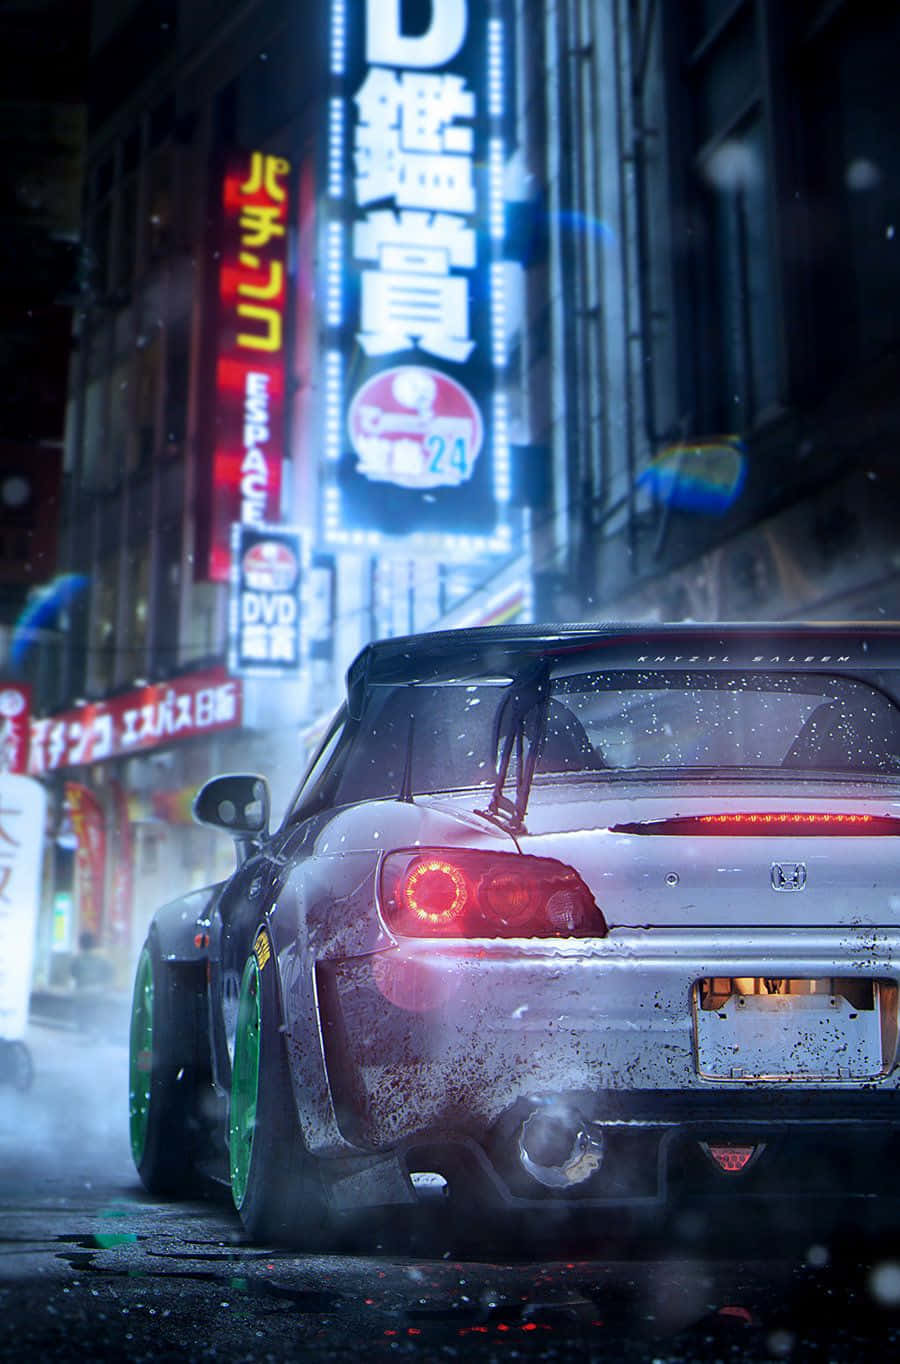 Emozionanteazione Con Pixel 3 - Sfondo Need For Speed